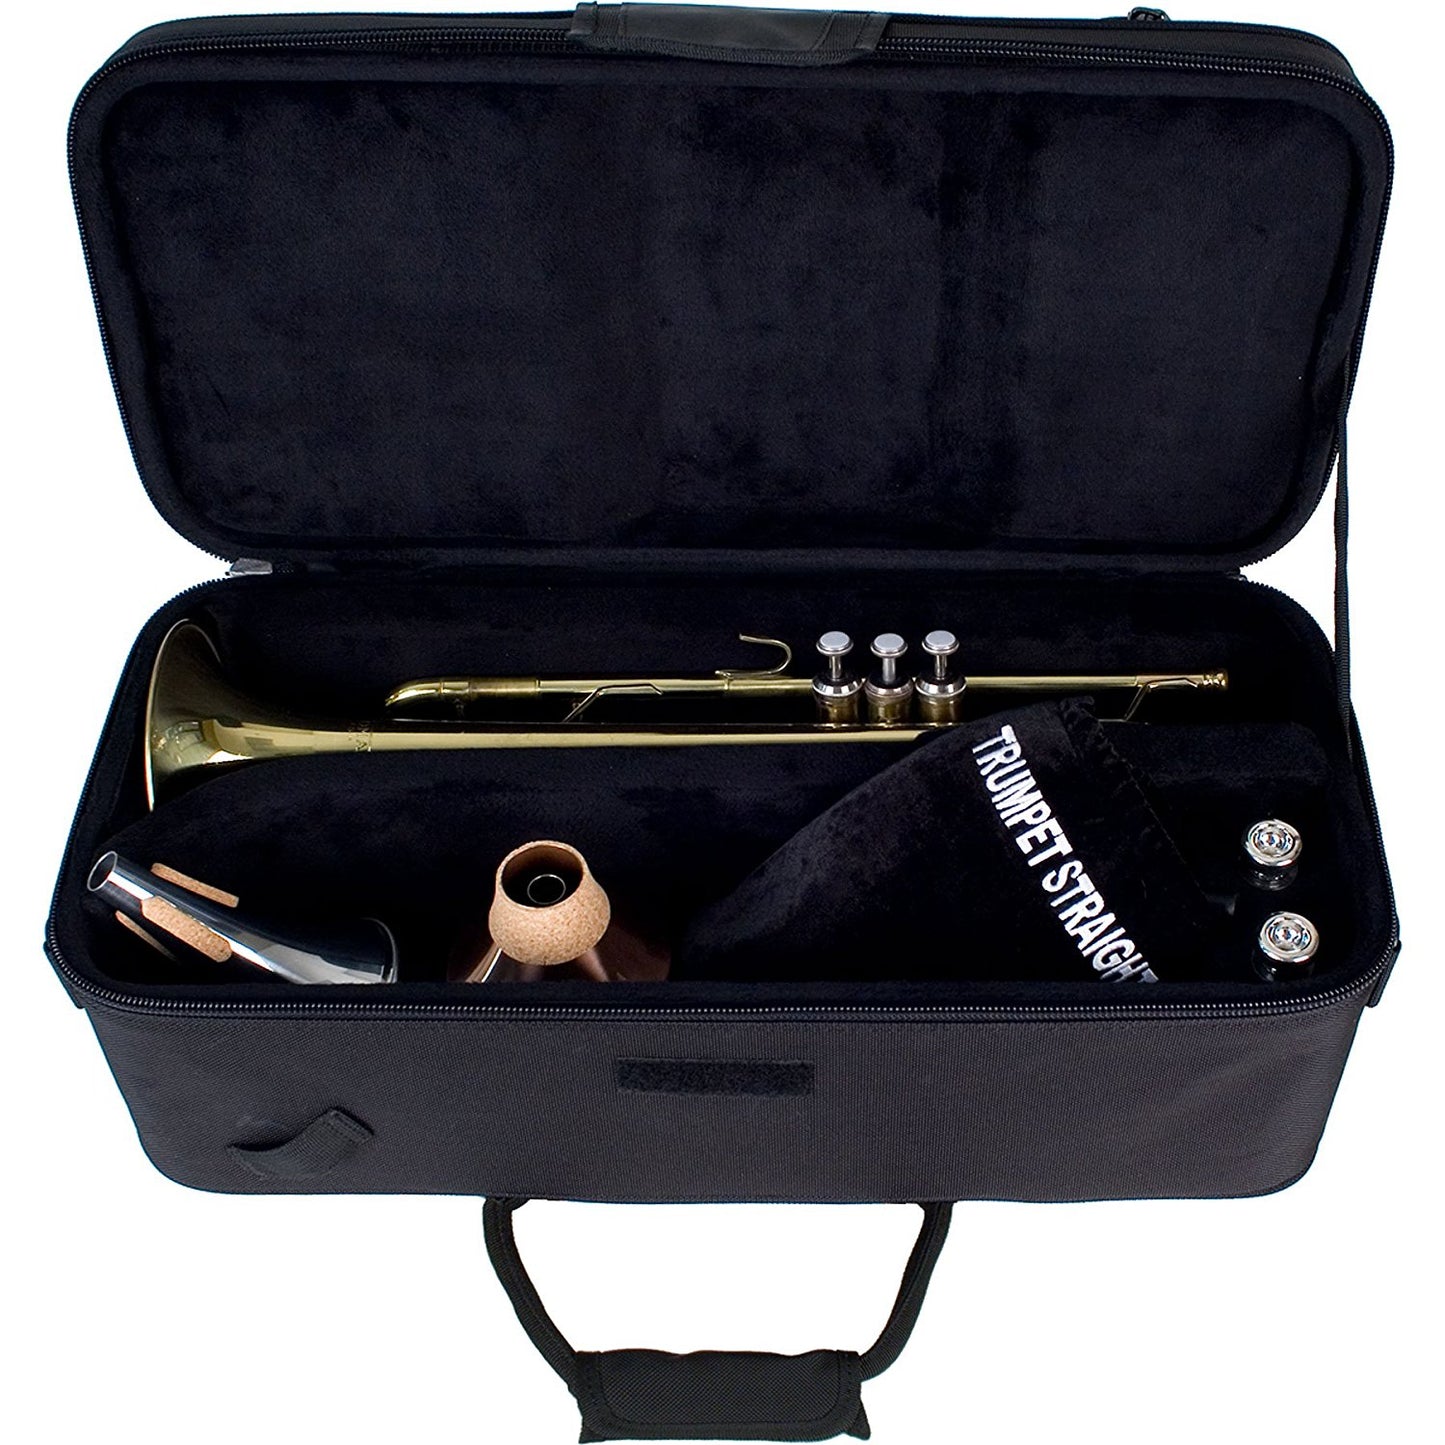 Protec Trumpet Rectangular PRO PAC Case - Black